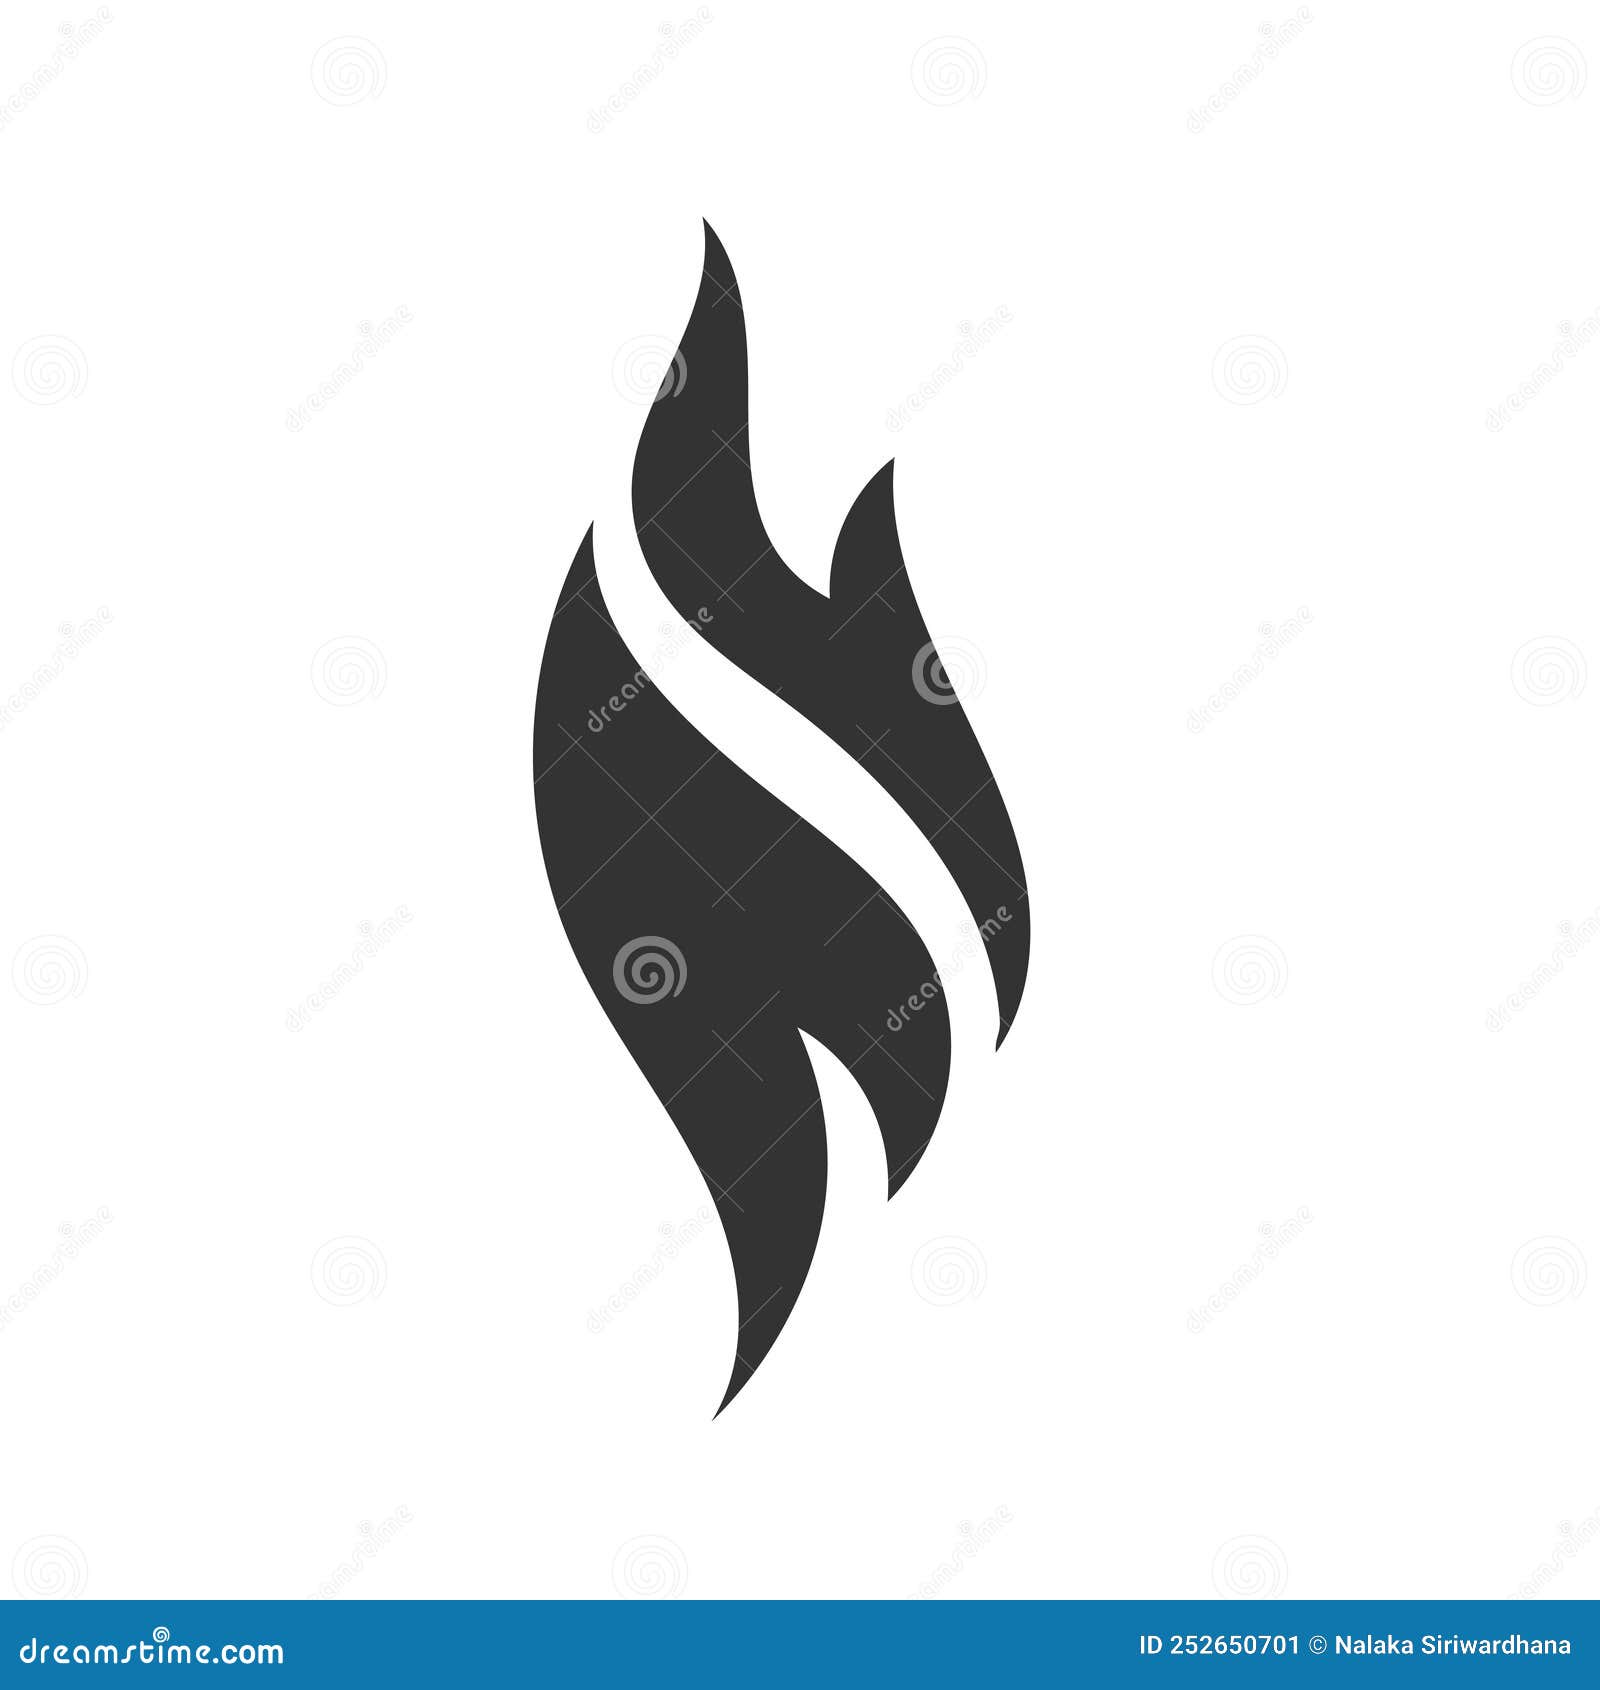 Símbolo Fino Do Contorno De Fogo Escuro No Fundo Branco Logotipo Editável  Modelo Criativo Ilustração do Vetor - Ilustração de impetuosamente,  inflame: 220876358